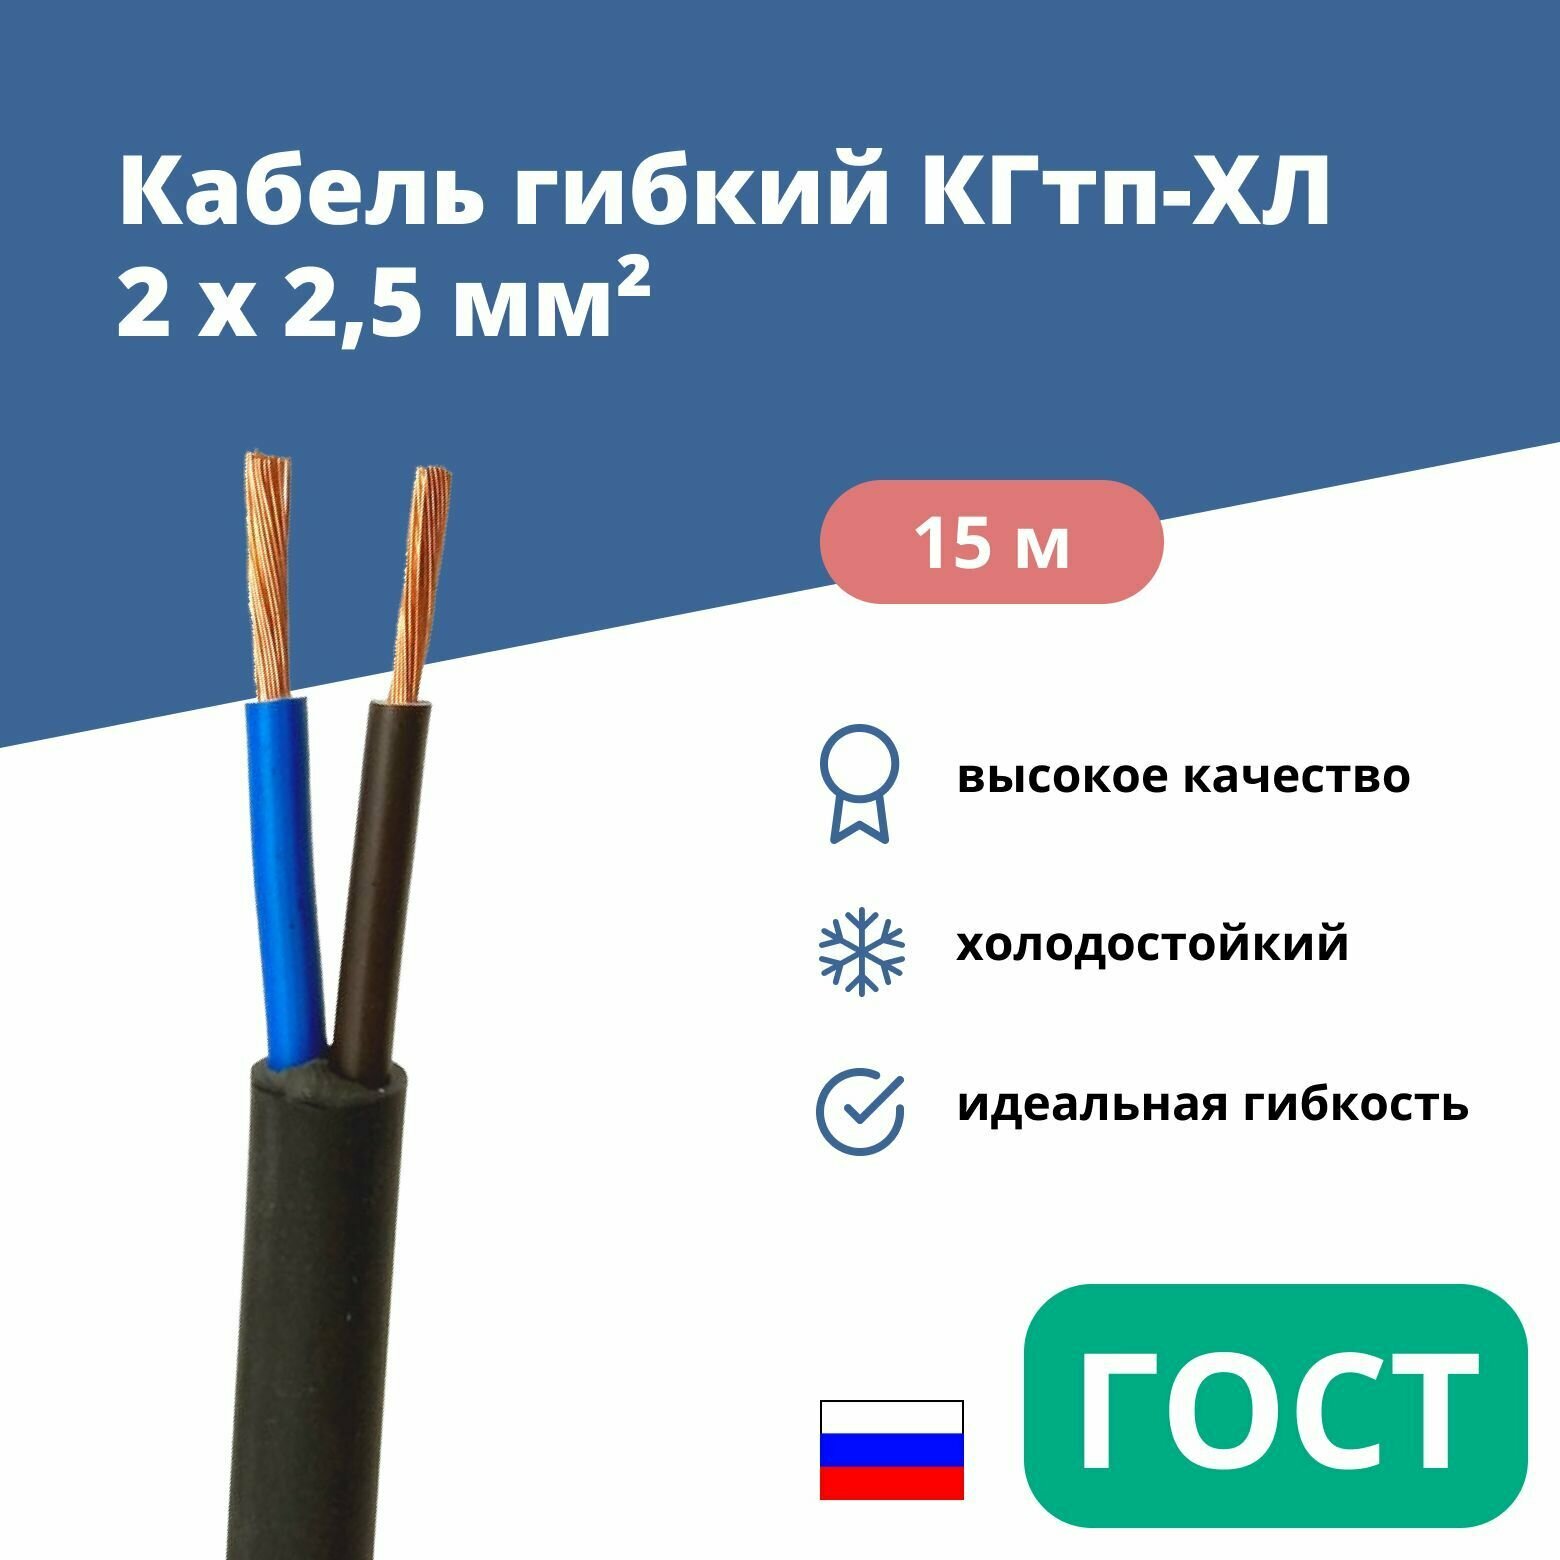 Силовой сварочный кабель гибкий кгтп-хл 2х2,5 уп. 15м.